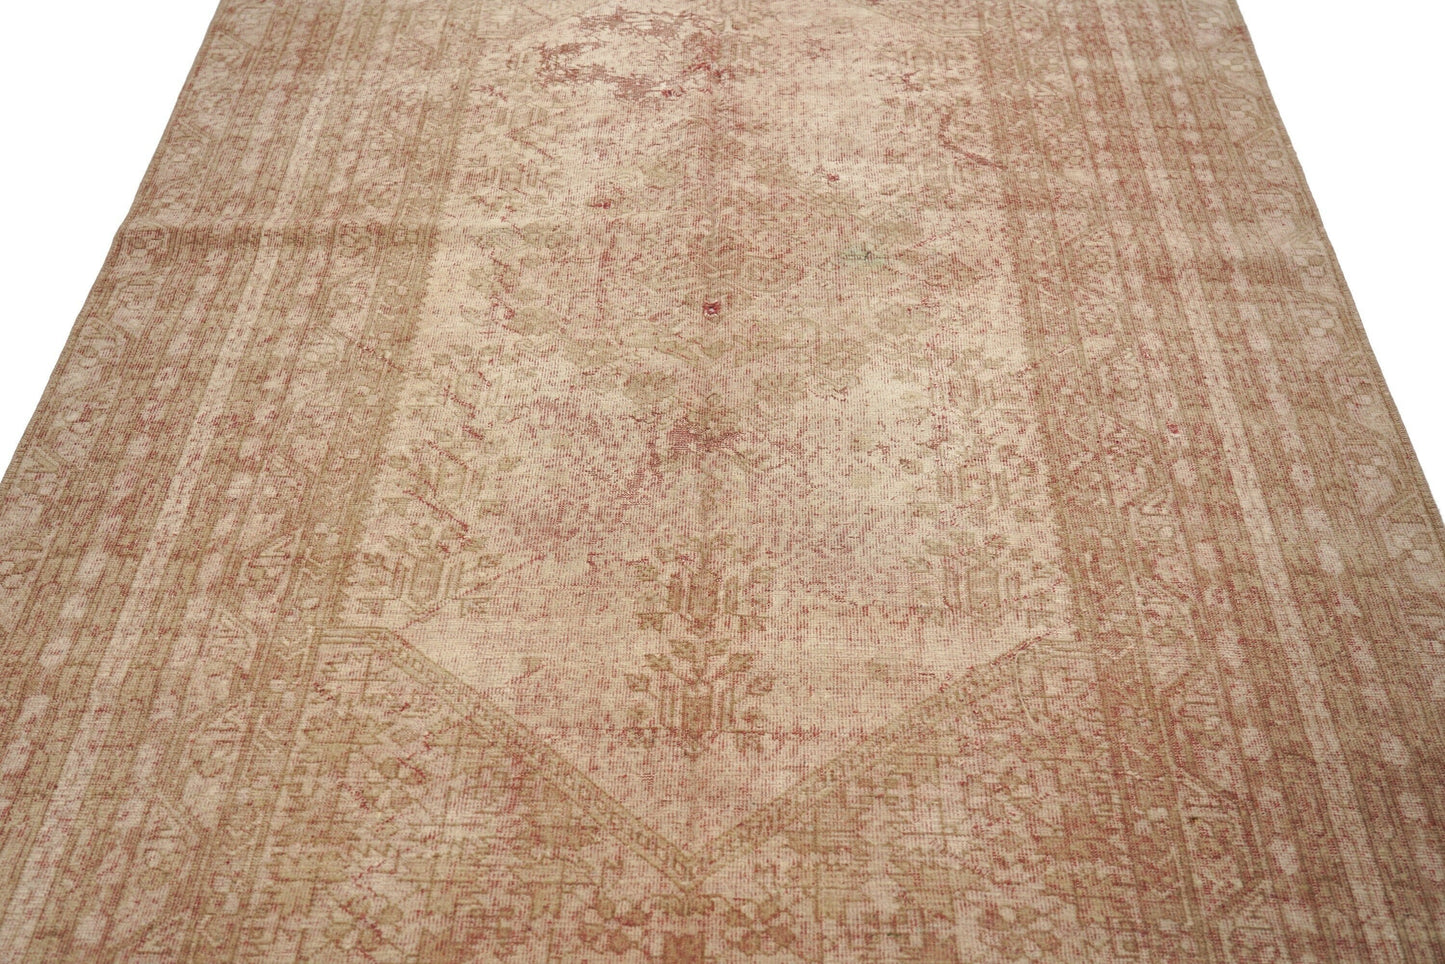 5x8 Antique Oushak Rug, Distressed Turkish rug, Handmade Carpet rug, Old rug, Oushak Carpet, One of a kind rug, Living room rug, 3169